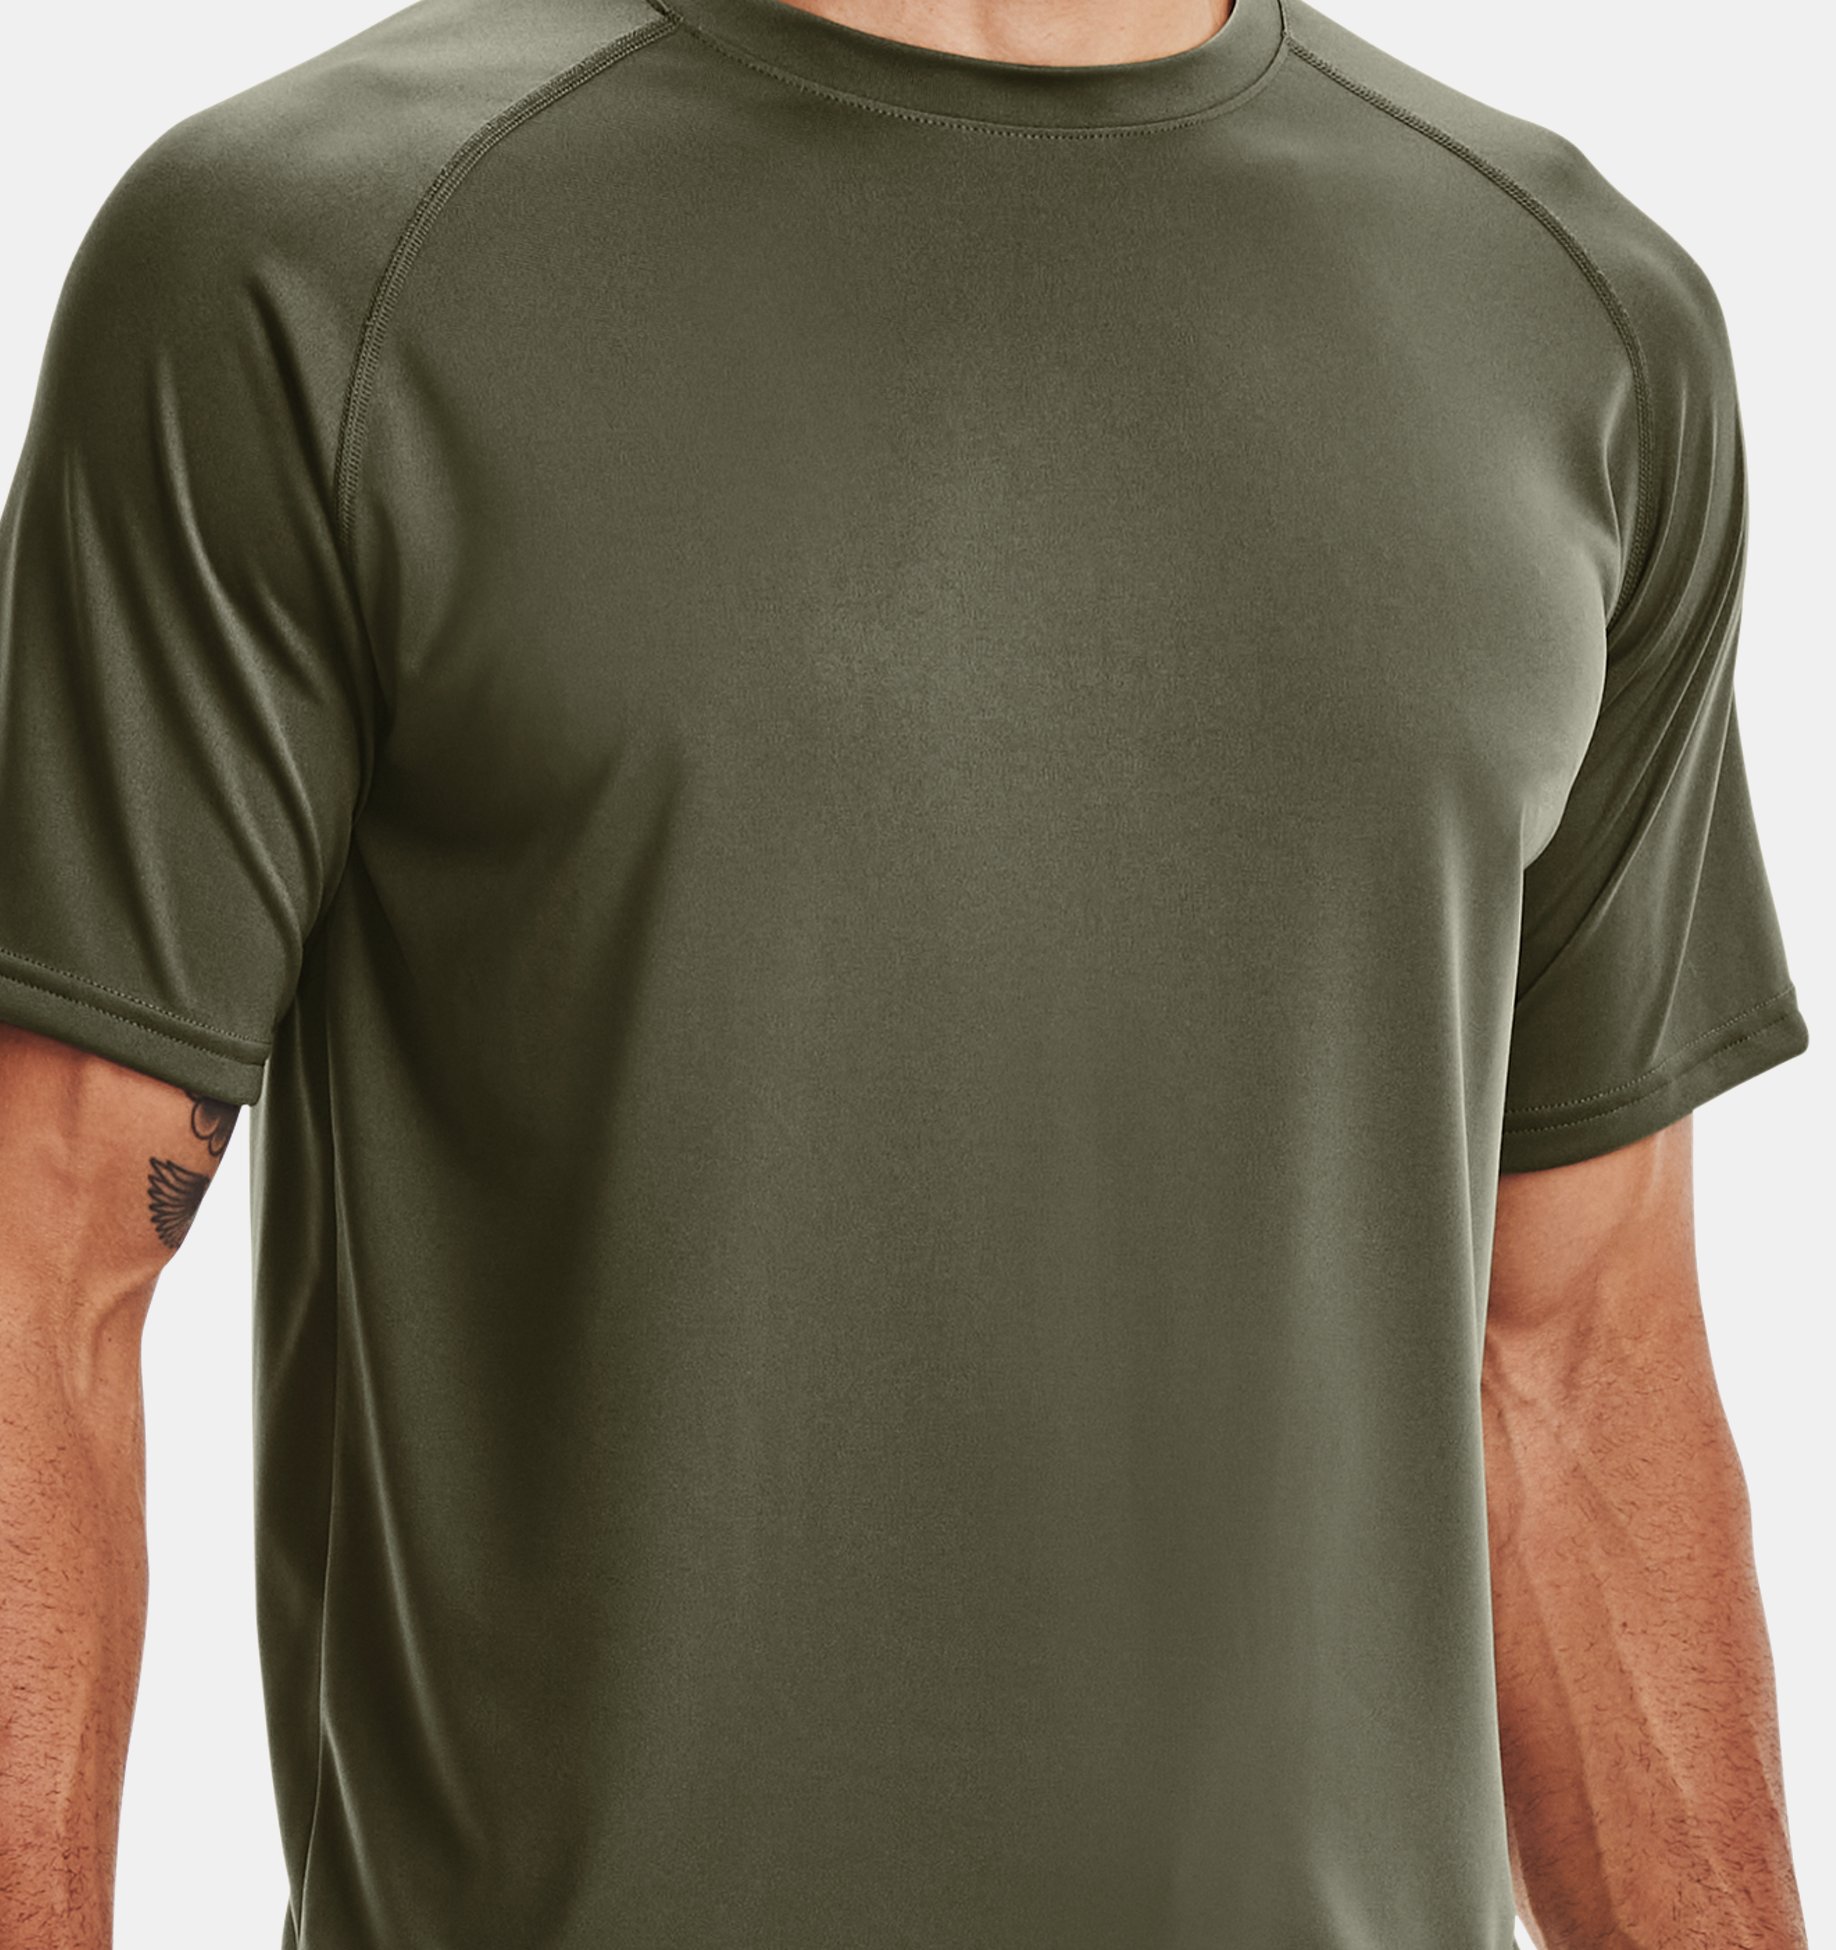 T-shirt Under Armour Tactical Tech - 1343357-001